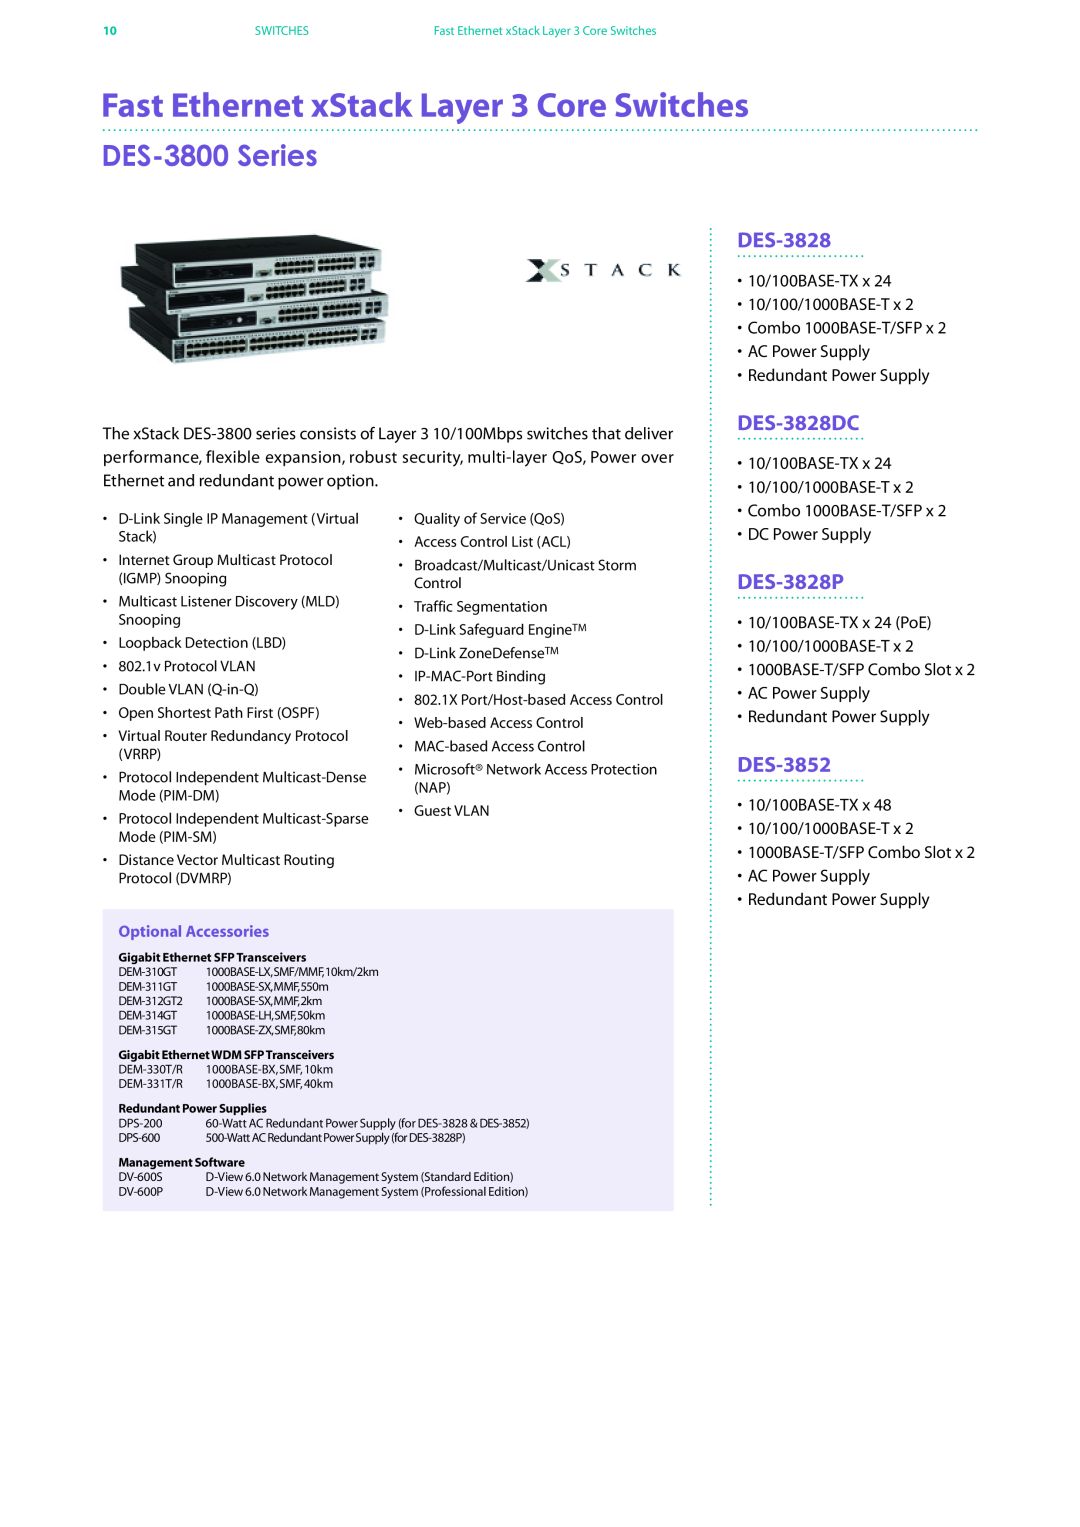 D-Link DES-7200 manual Fast Ethernet xStack Layer 3 Core Switches, DES-3800 Series, DES-3828DC, DES-3828P, DES-3852 